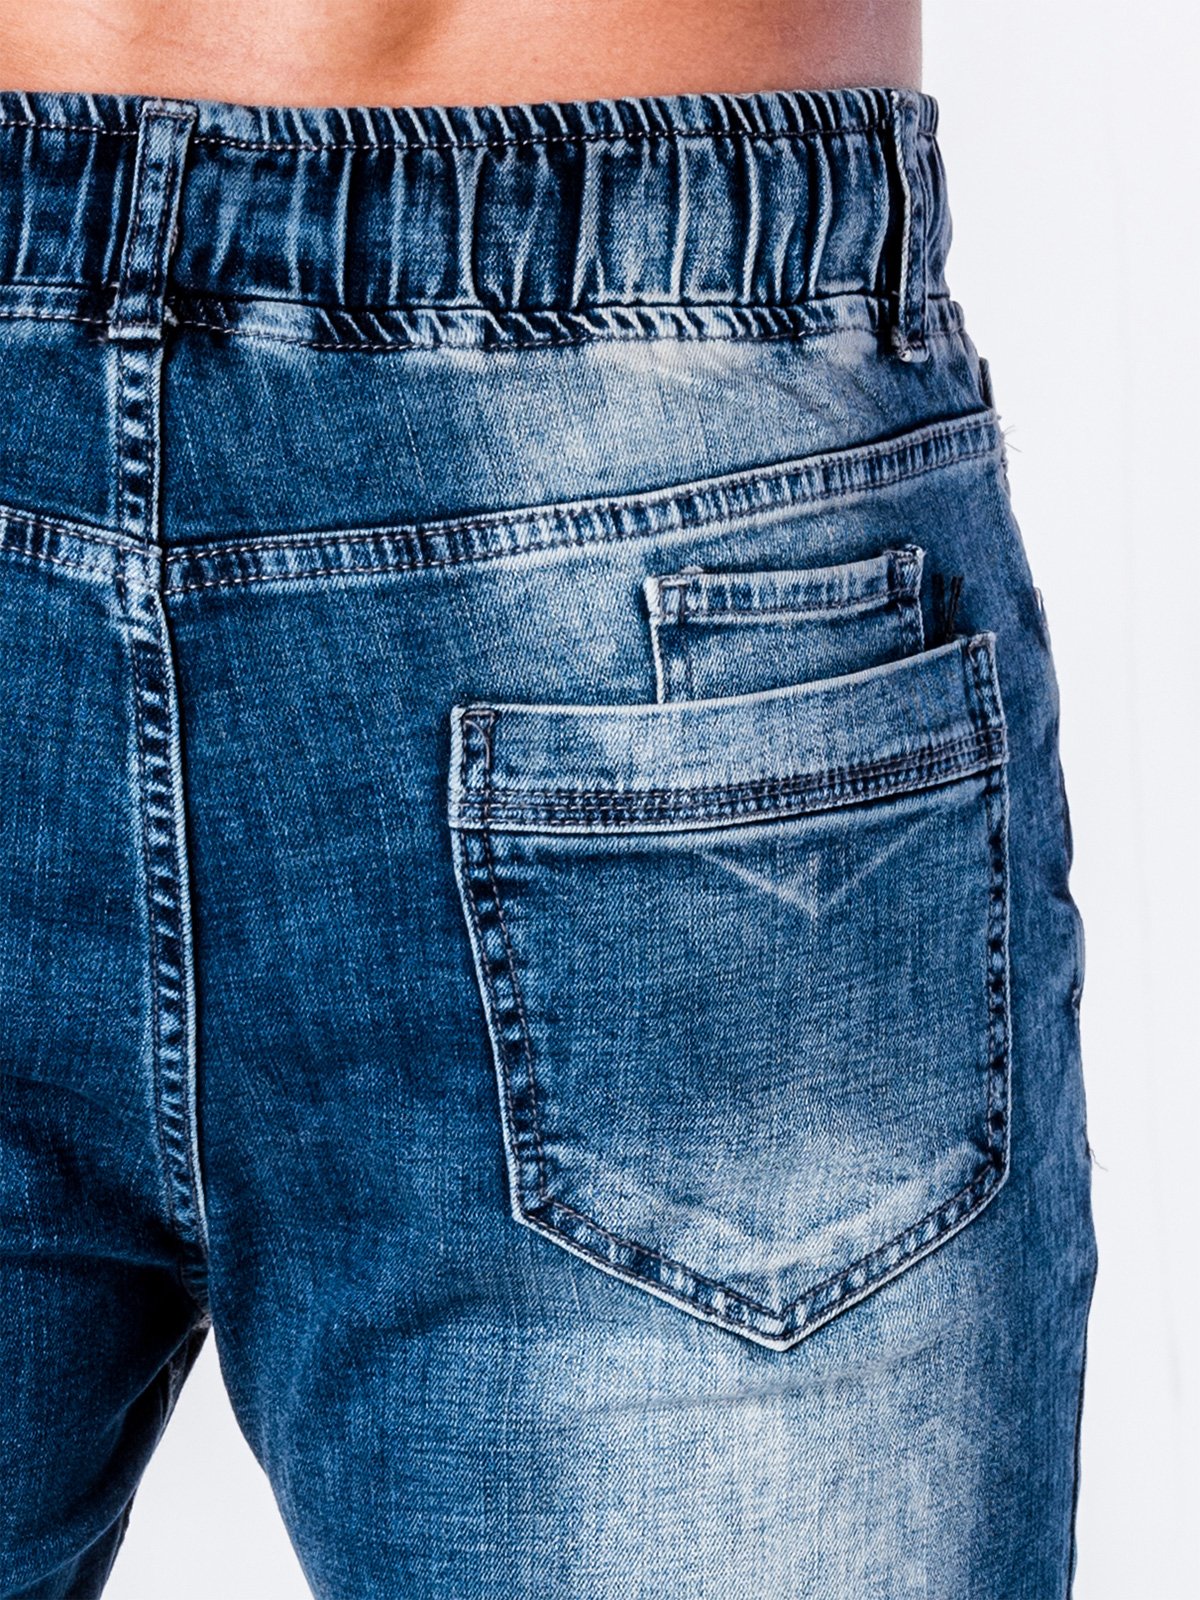 Men's denim jogger pants - blue P663 | MODONE wholesale - Clothing For Men